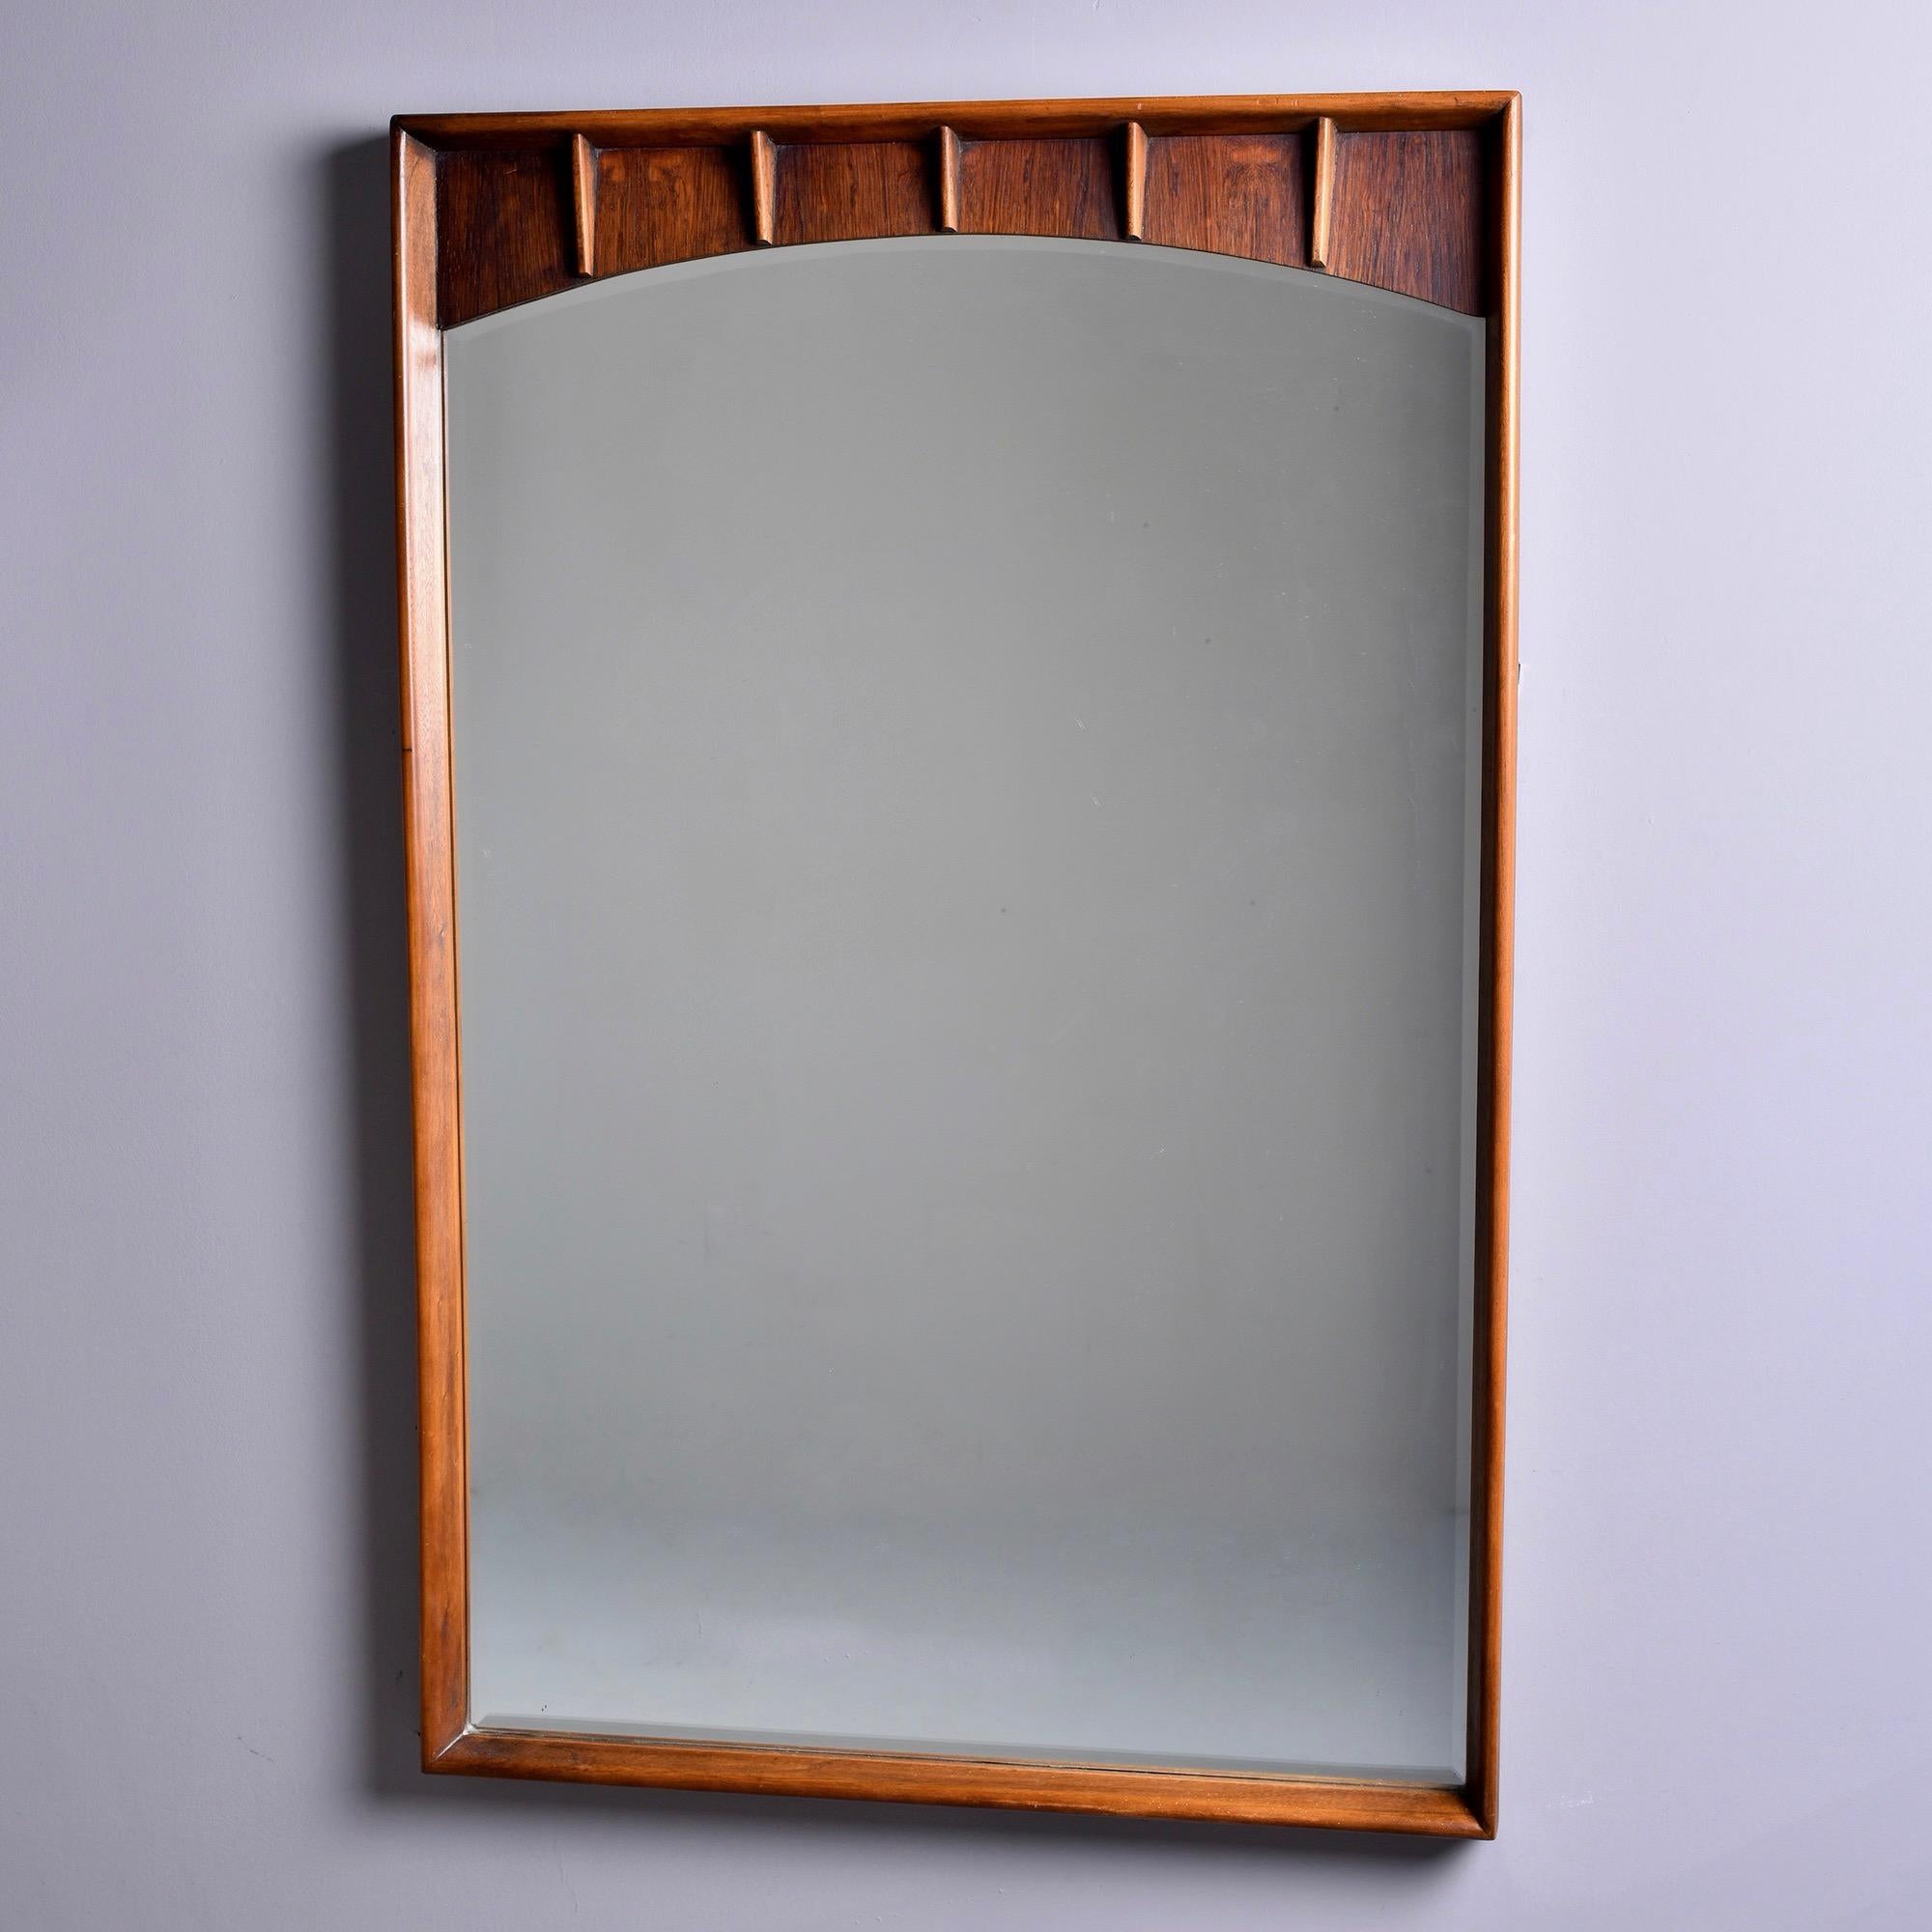 Le miroir datant des années 1960 présente un subtil arc supérieur et un cadre profond en noyer et en pécan serti avec des accents étroits et nervurés au sommet. Les bords des miroirs sont biseautés. Trouvé aux États-Unis. Fabricant inconnu.